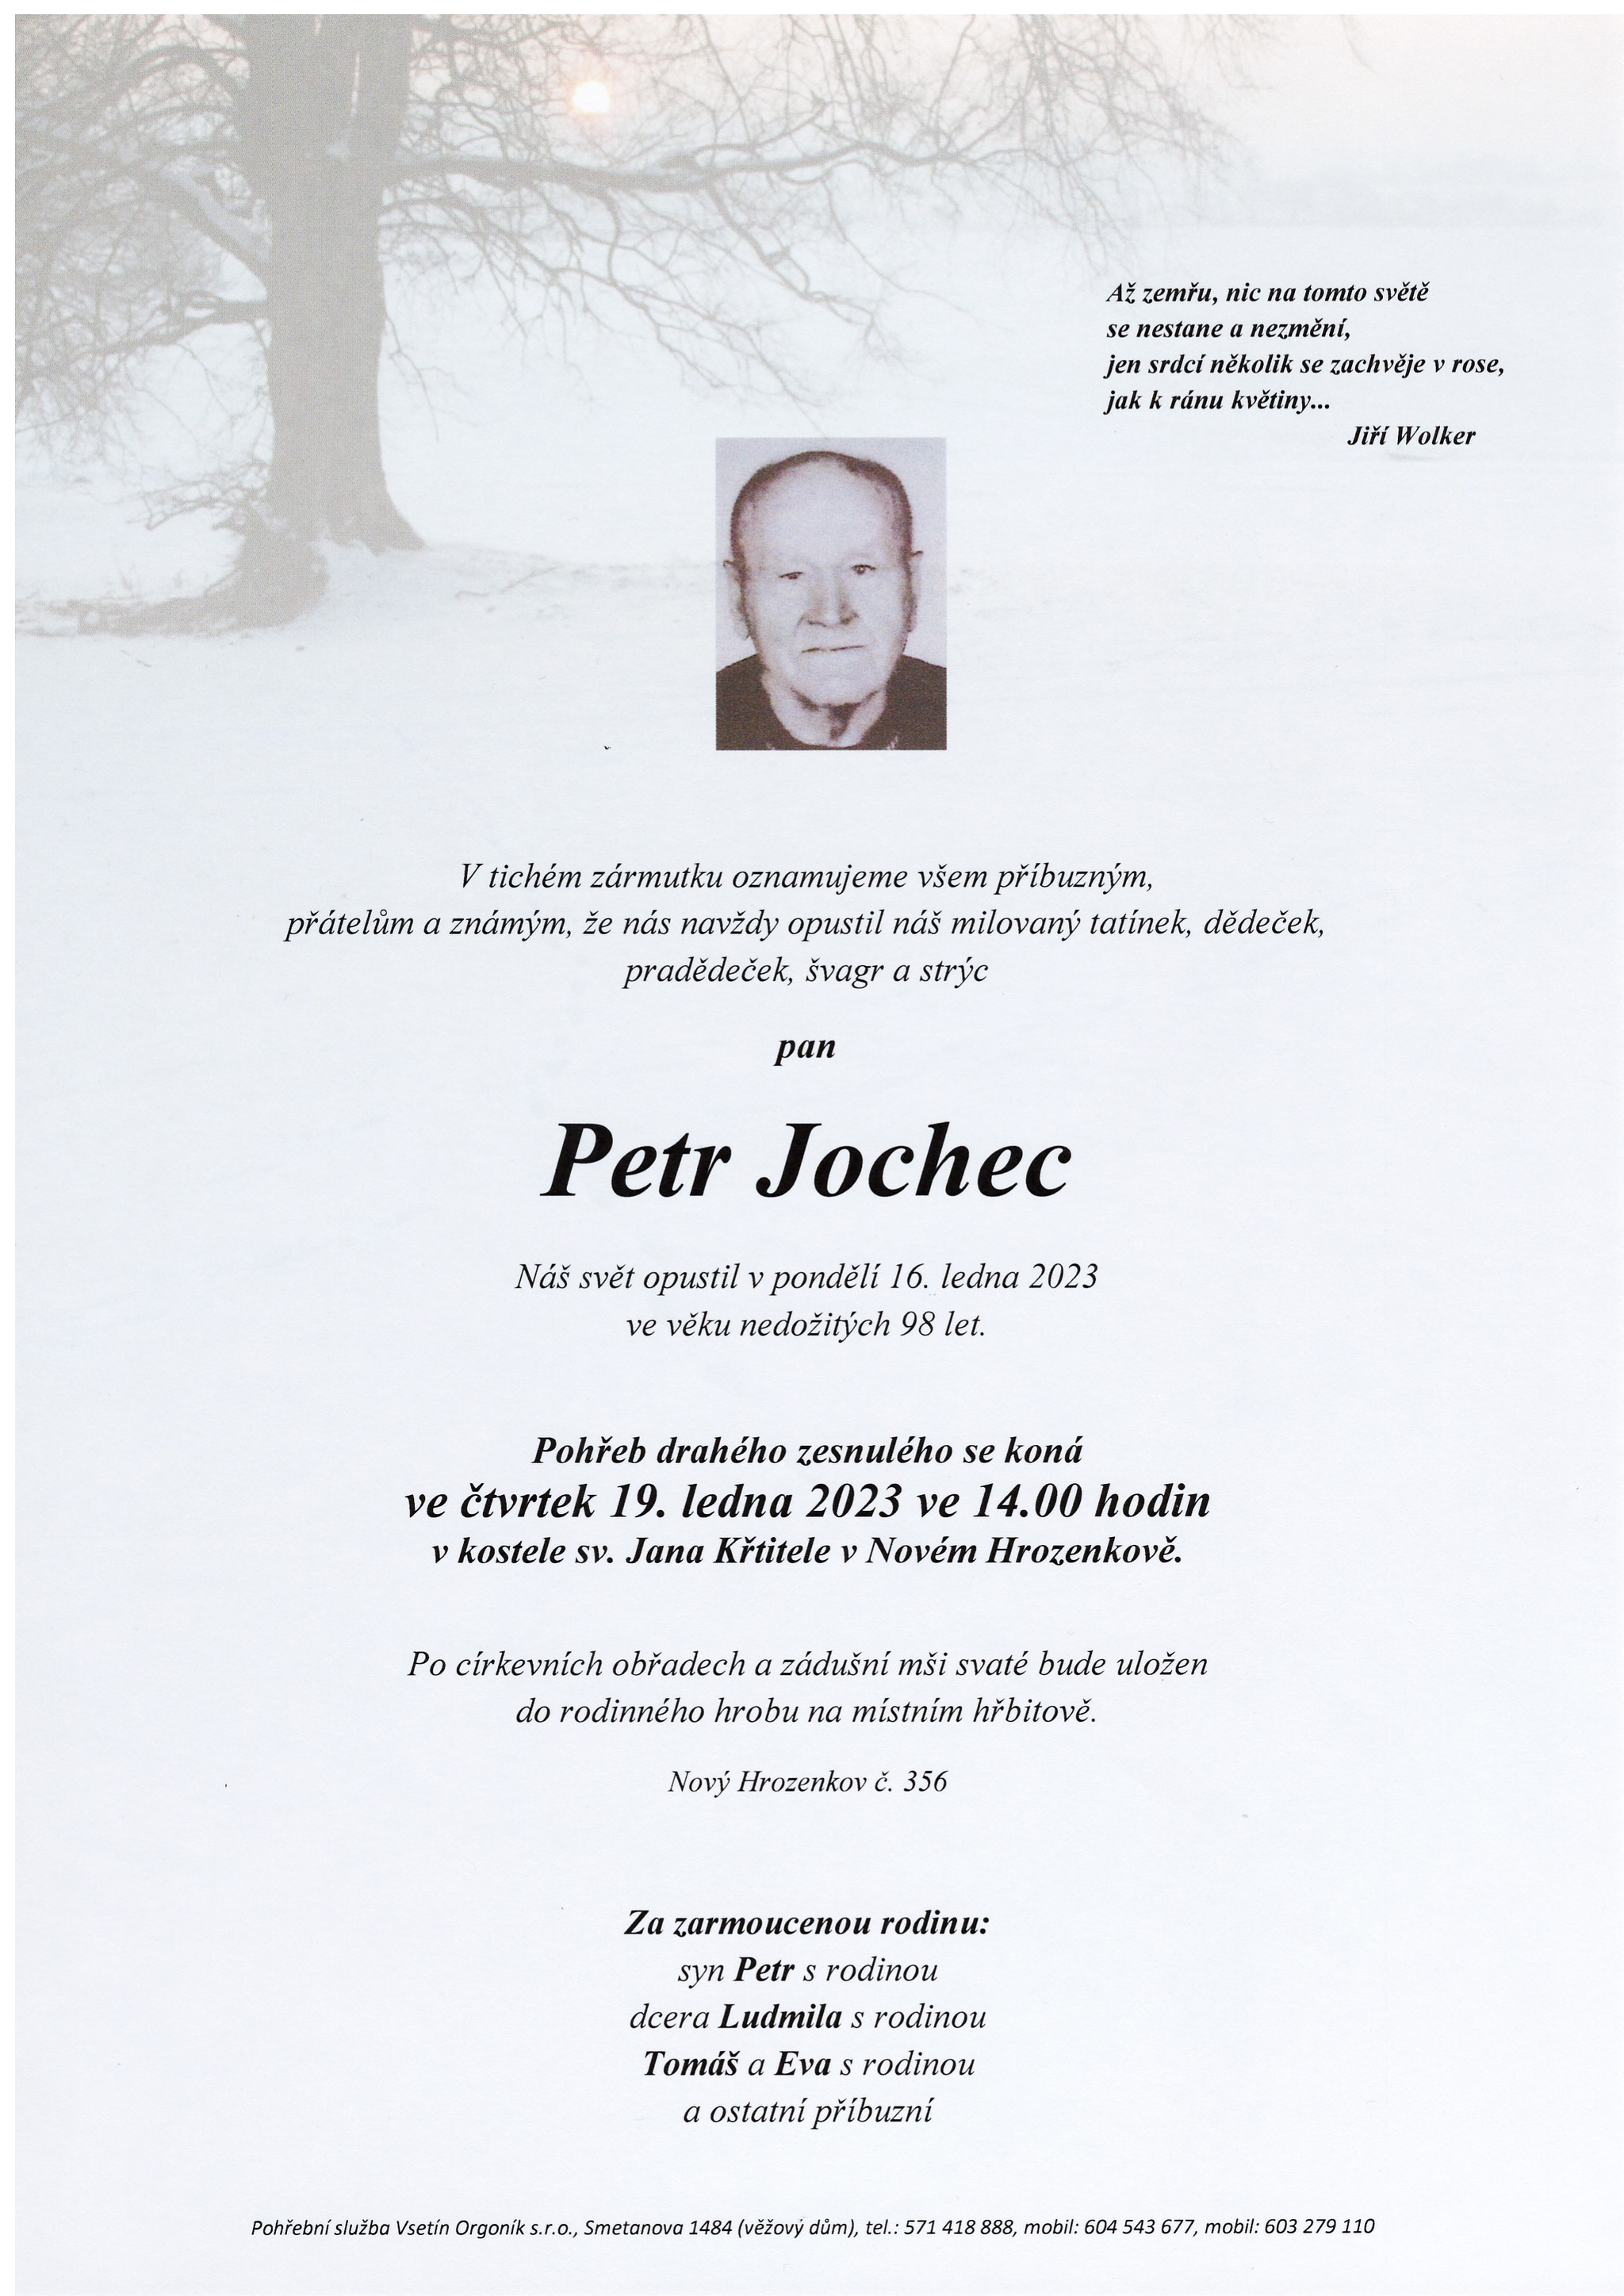 Petr Jochec